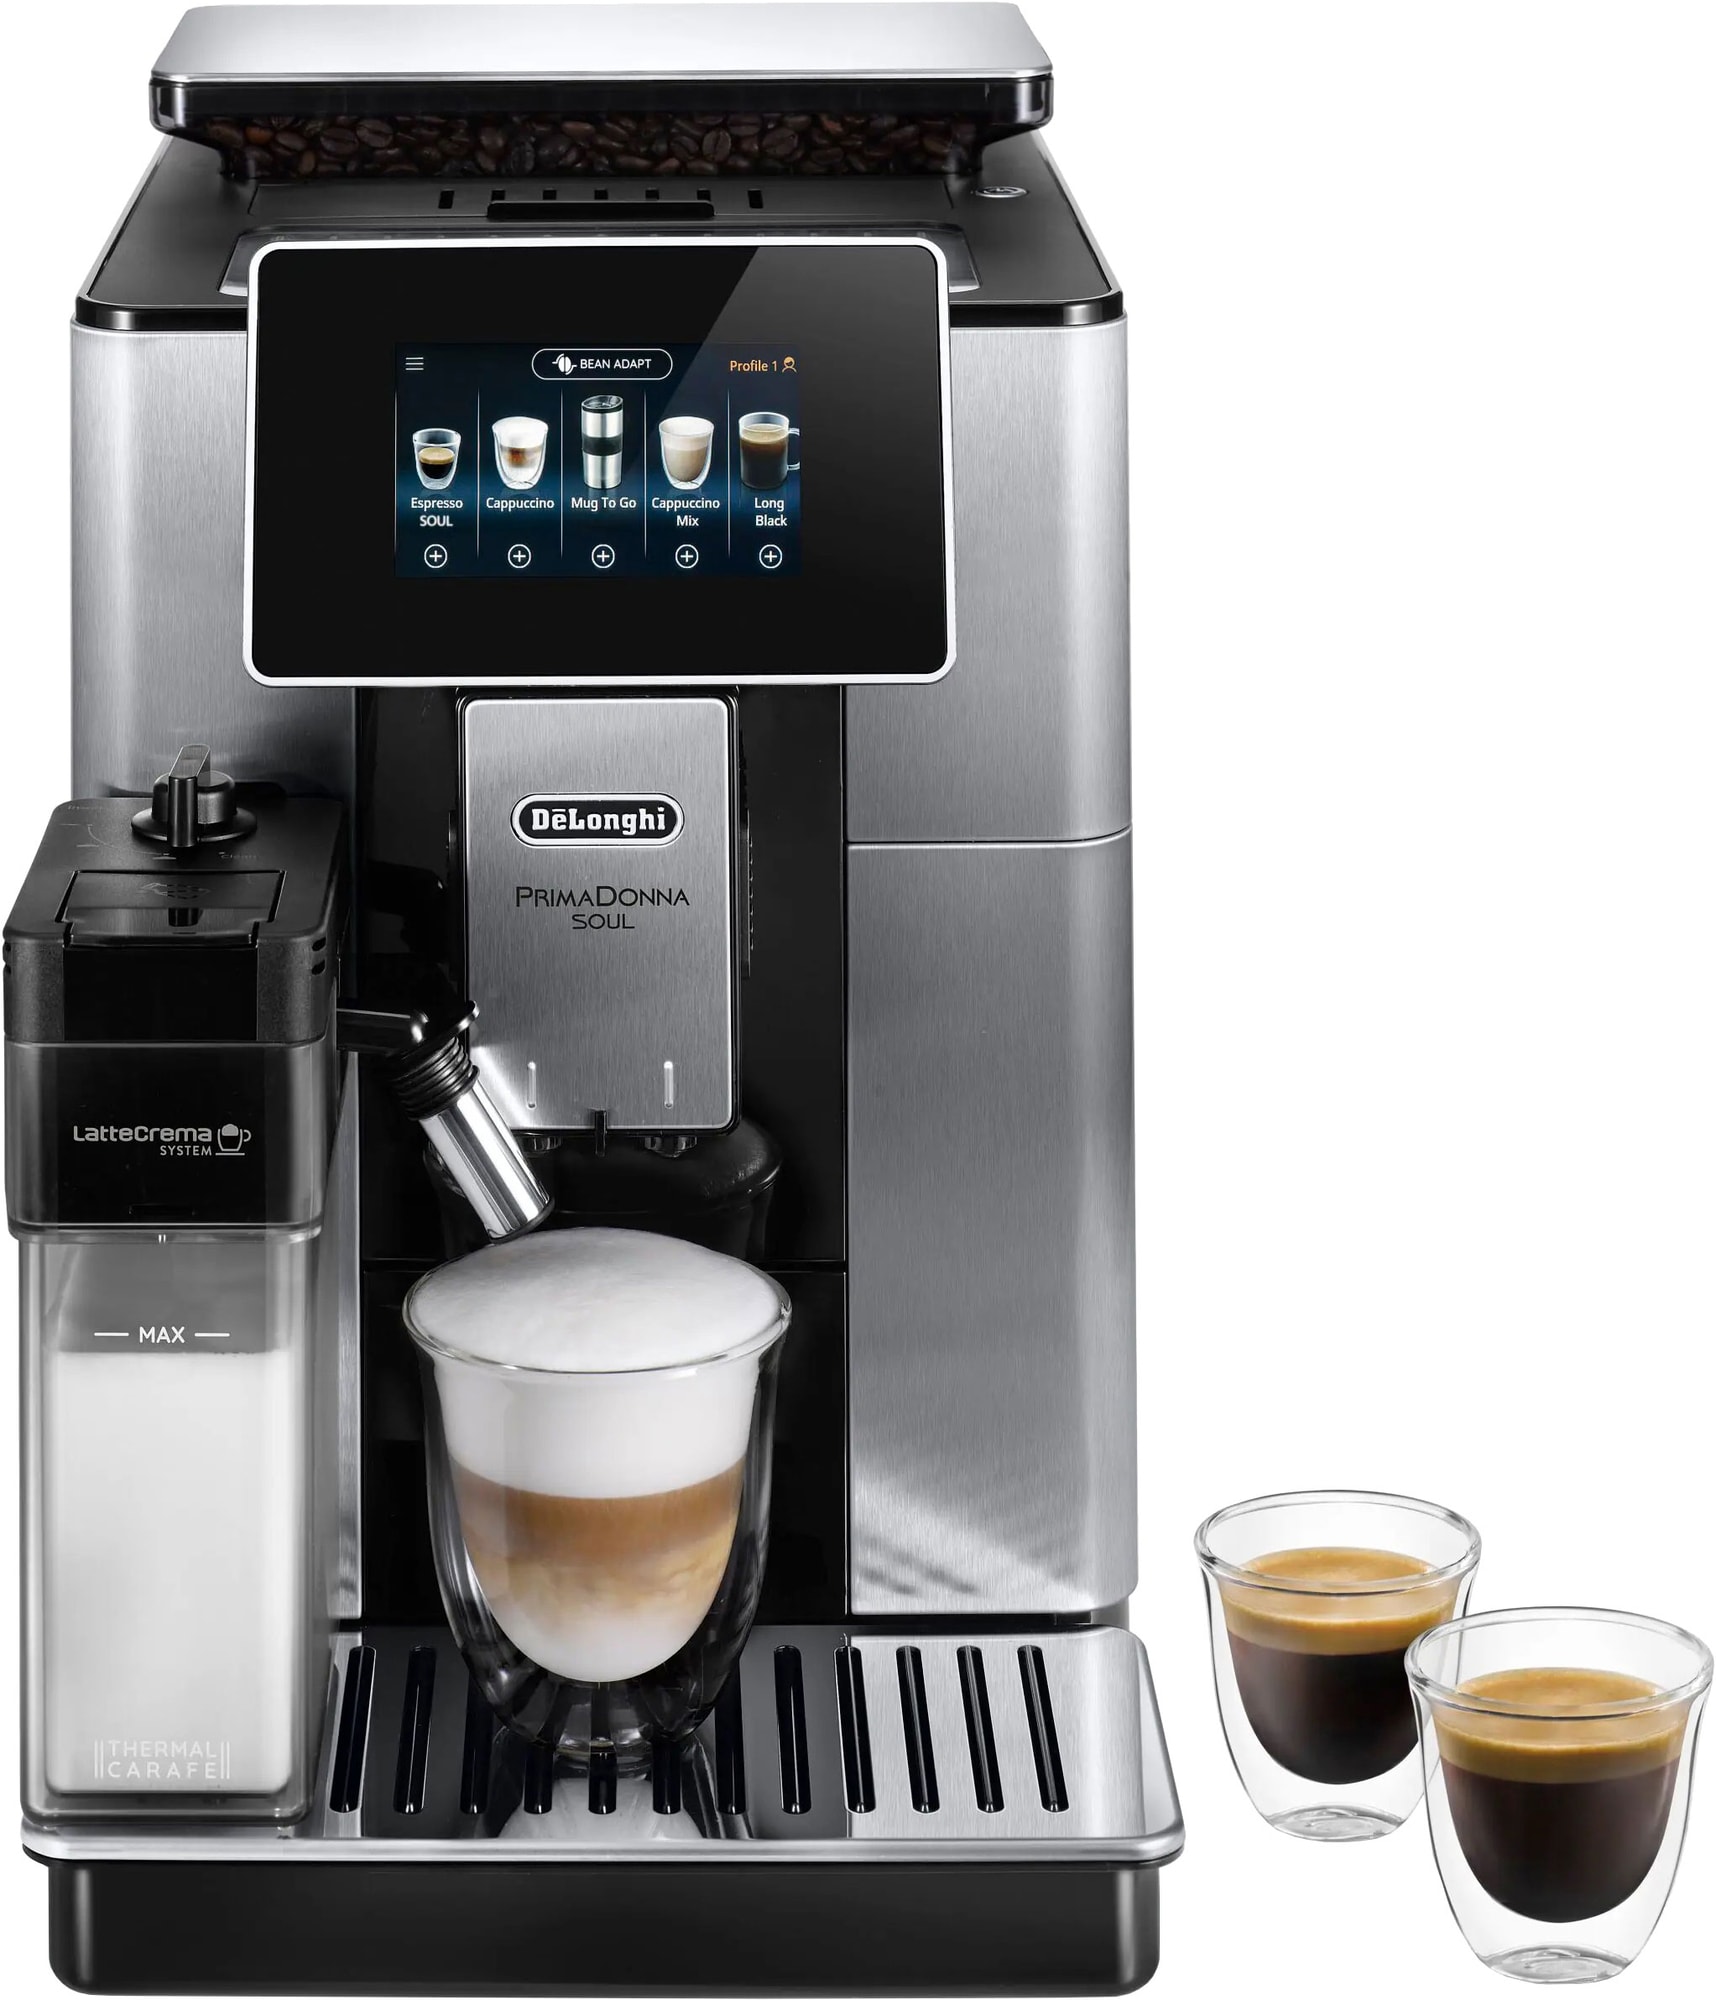 DeLonghi Primadonna Soul ECAM610.74.MB automatisk kaffemaskine